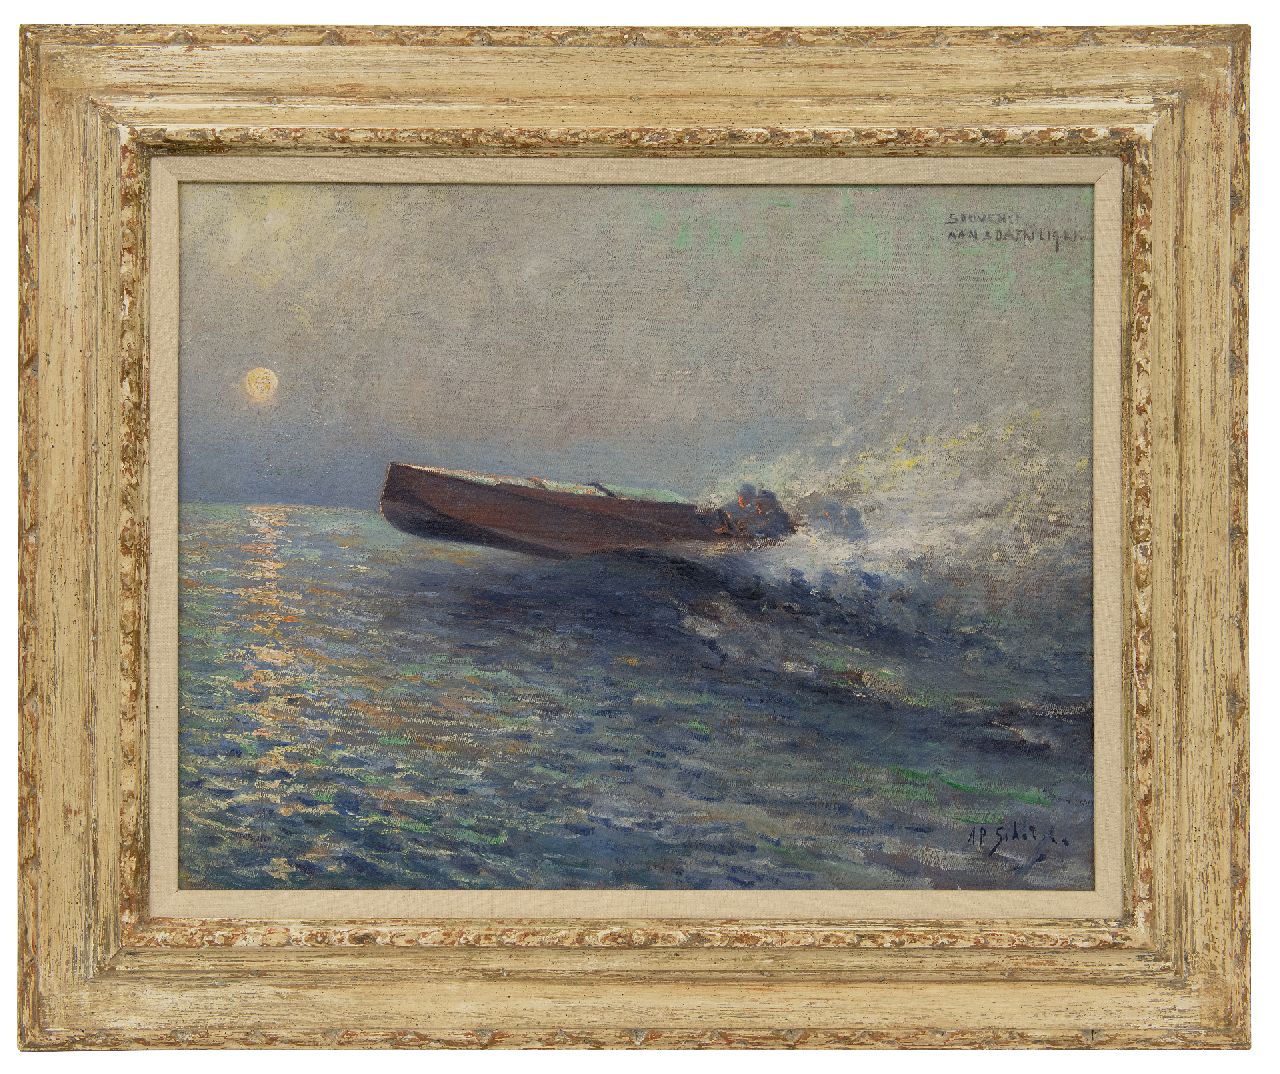 Schotel A.P.  | Anthonie Pieter Schotel, Schnellboot auf dem Meer bei Sonnenuntergang, Öl auf Leinwand 43,6 x 57,3 cm, Unterzeichnet u.r.